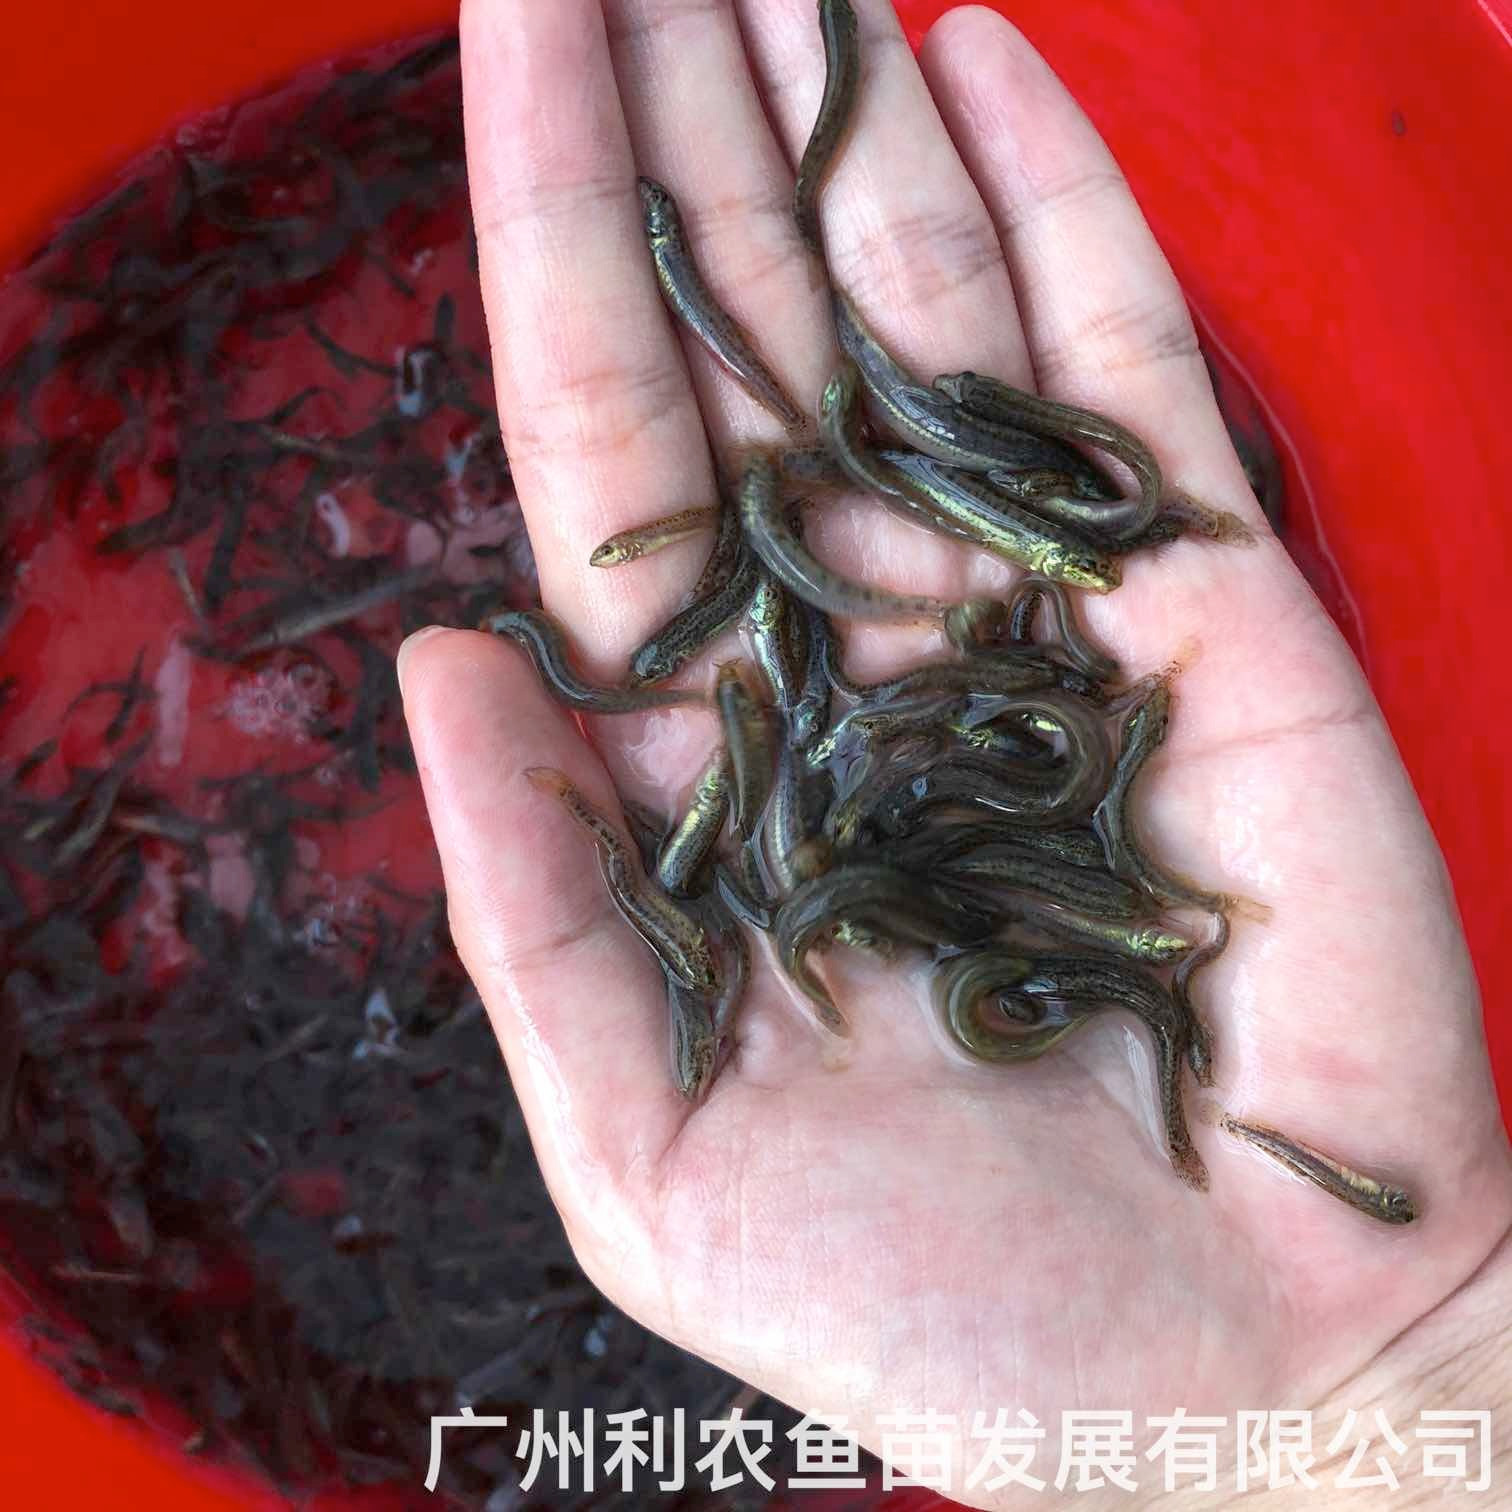 番禺台湾泥鳅苗出售高州泥鳅鱼苗批发